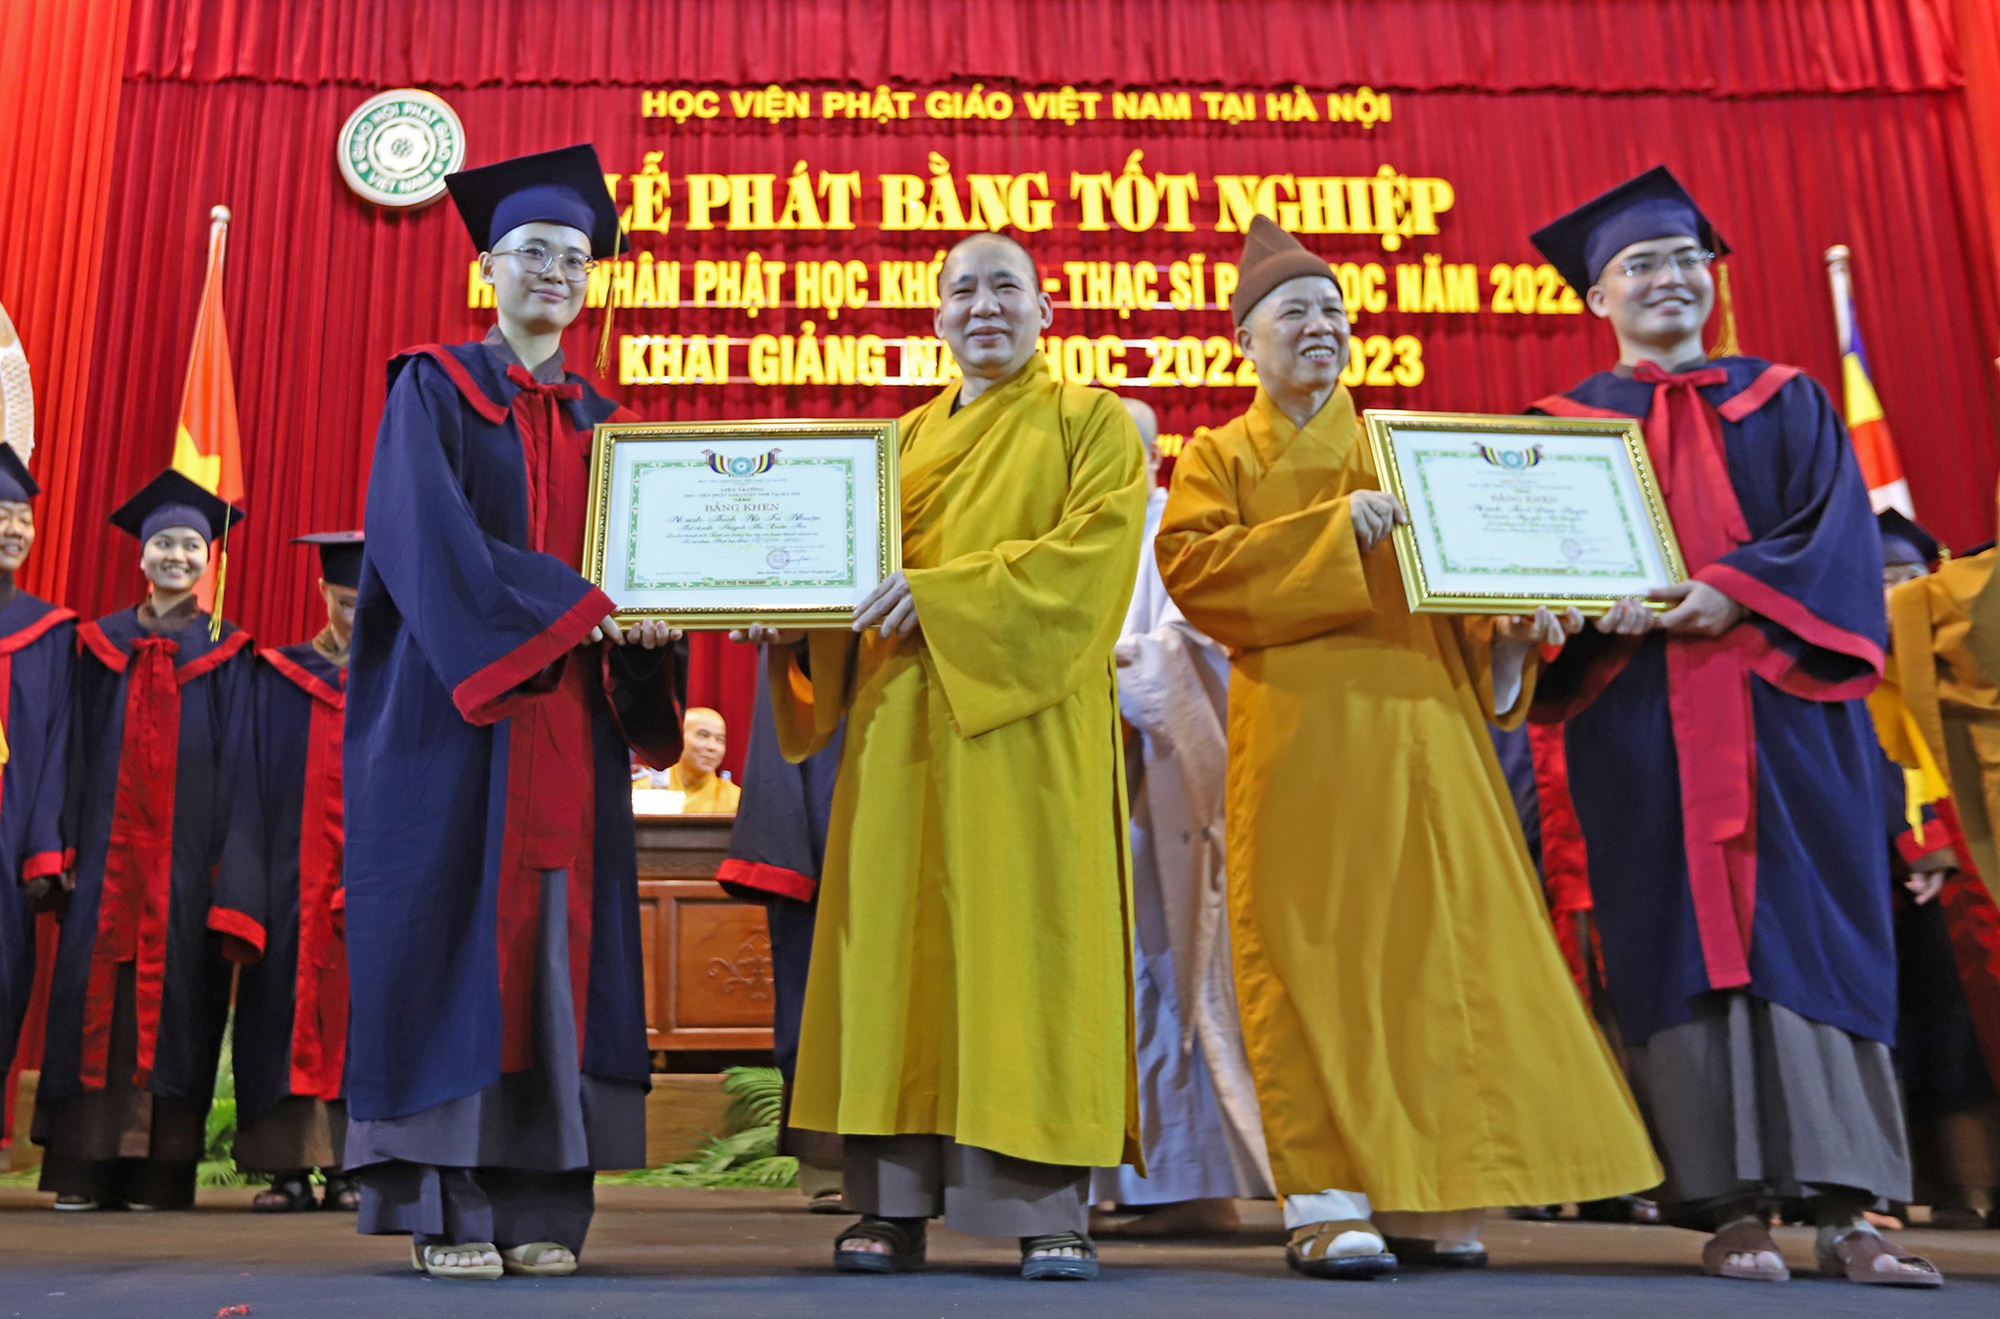 Lễ khai giảng đặc biệt tại ngôi trường có nhiều nhà sư theo học nhất Việt Nam - Ảnh 8.